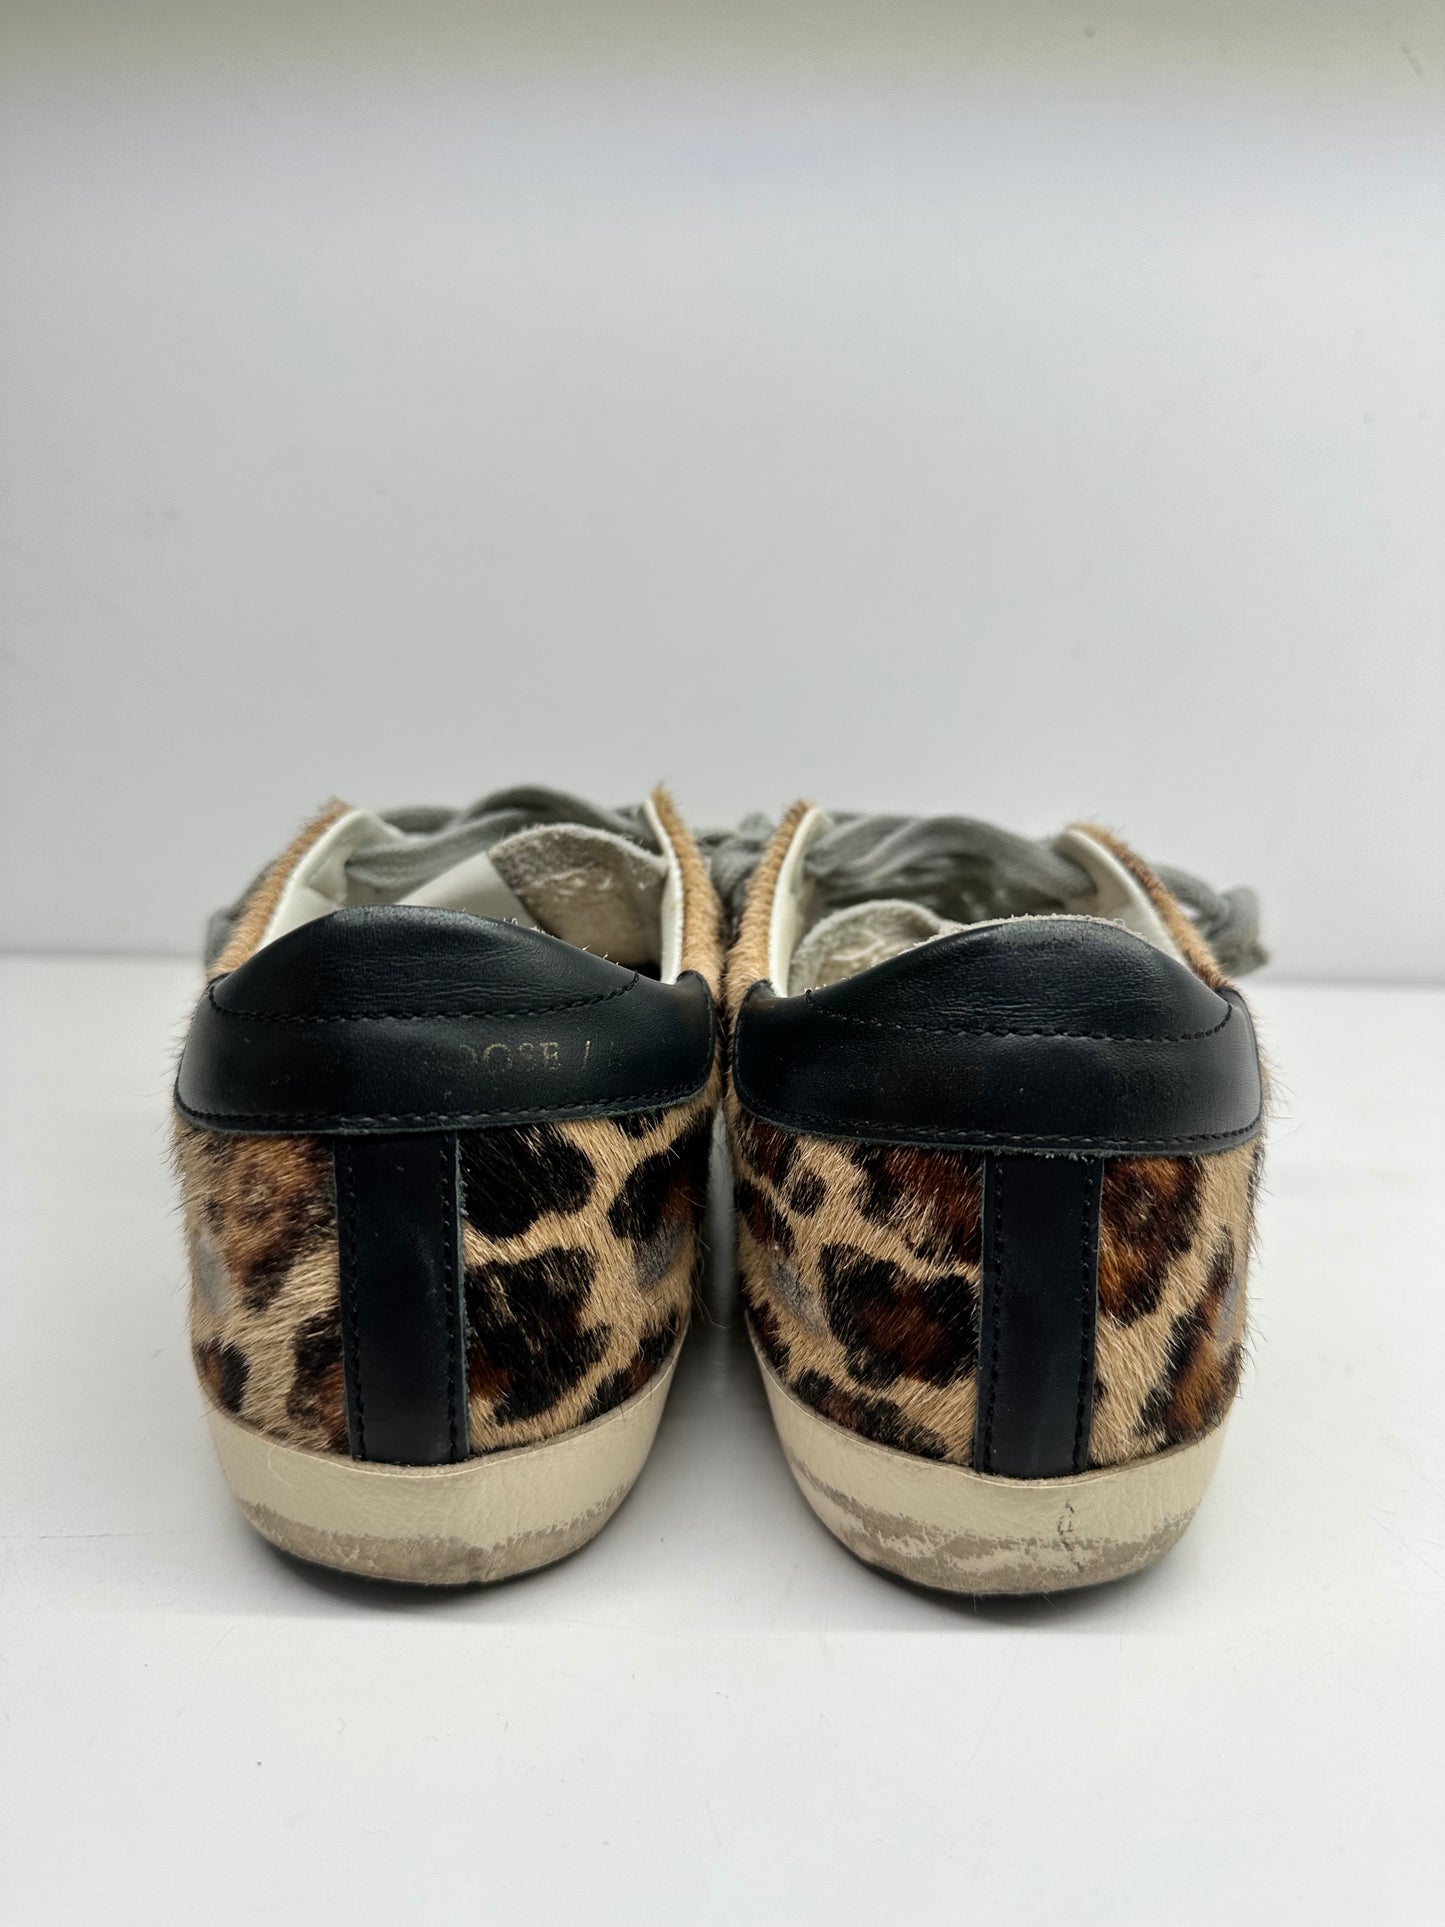 Golden Goose Leopard Sneakers, 35